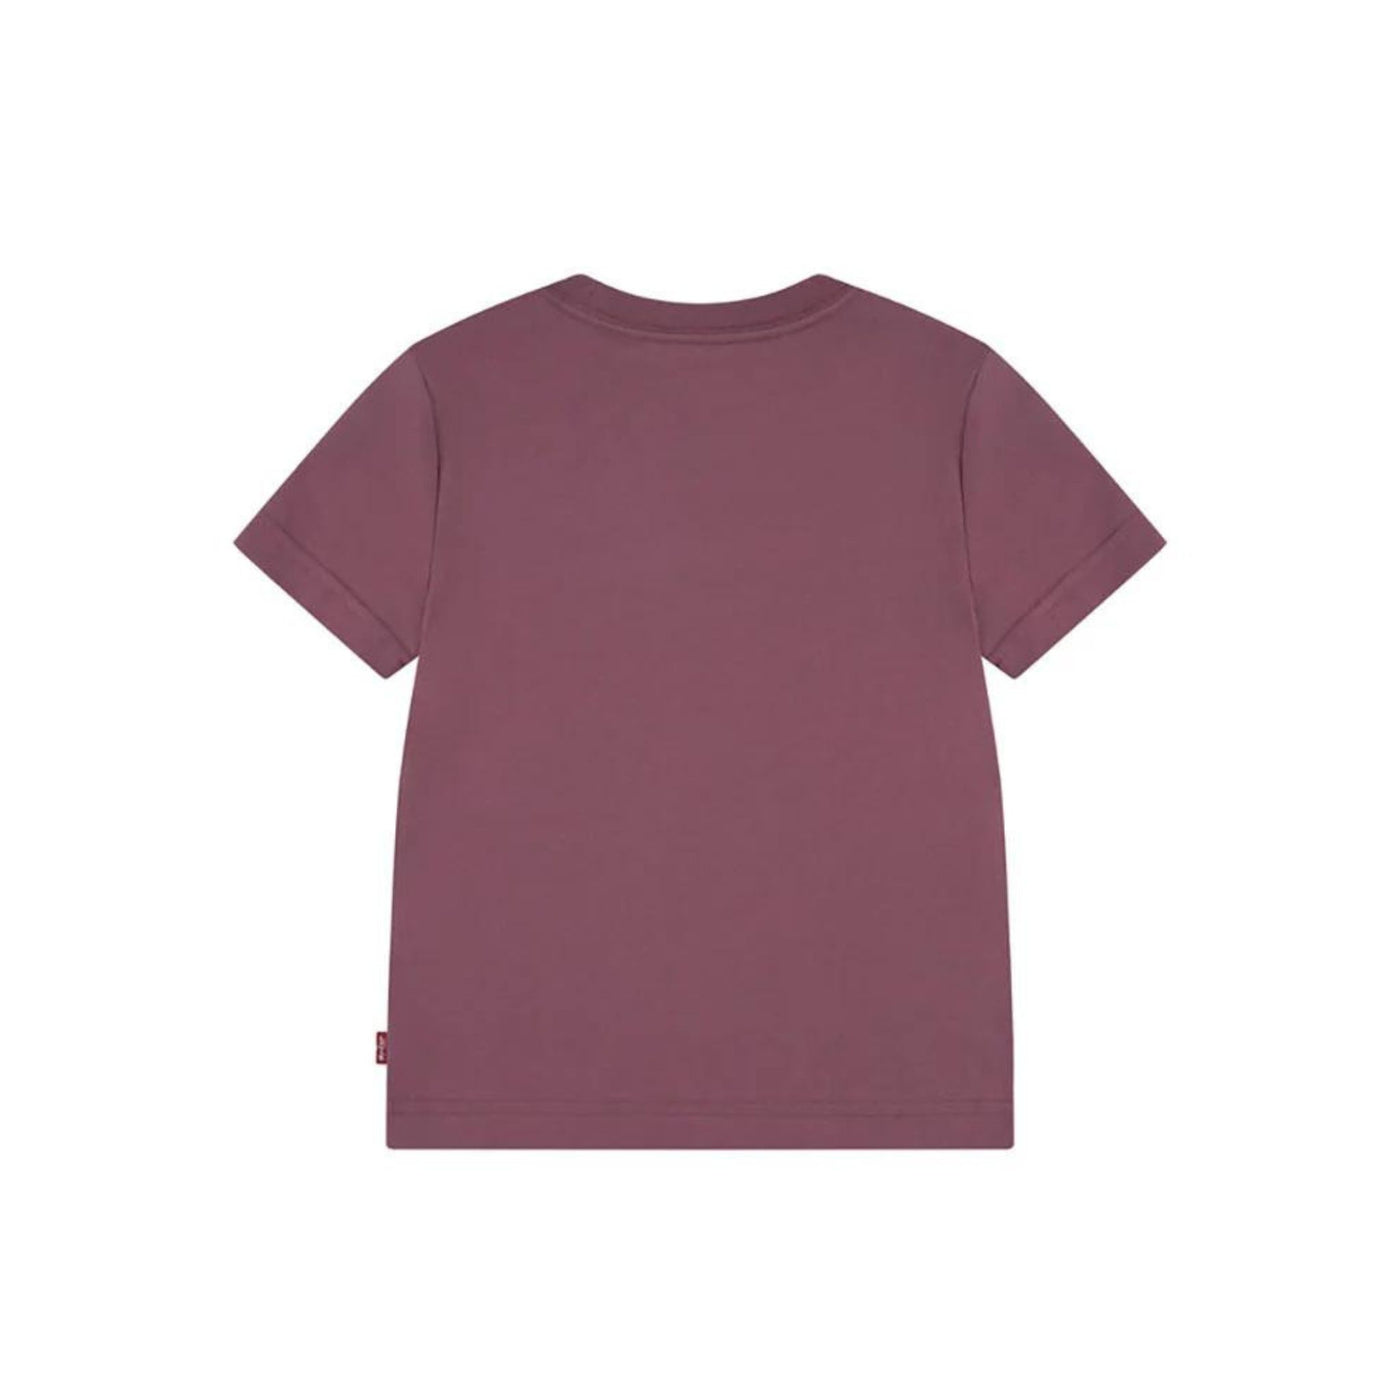 T-shirt Bambino in cotone tinta unita con logo a contrasto